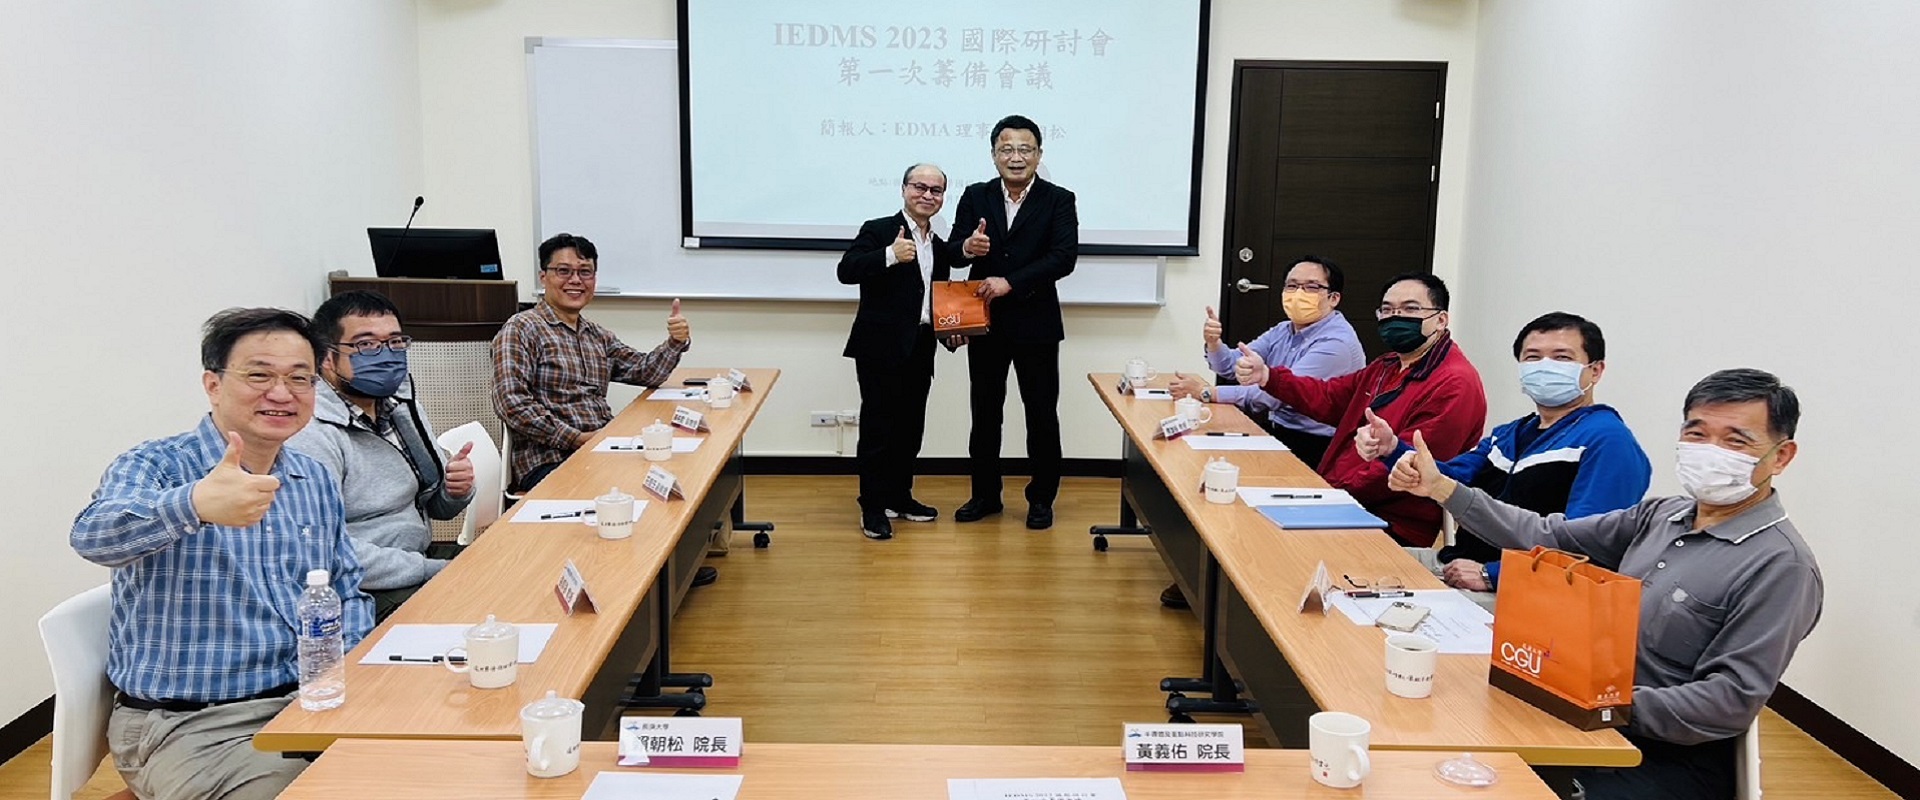 EDMA賴朝松理事長拜訪中山大學半導體學院研商IEDMS 2023國際研討會籌備事宜